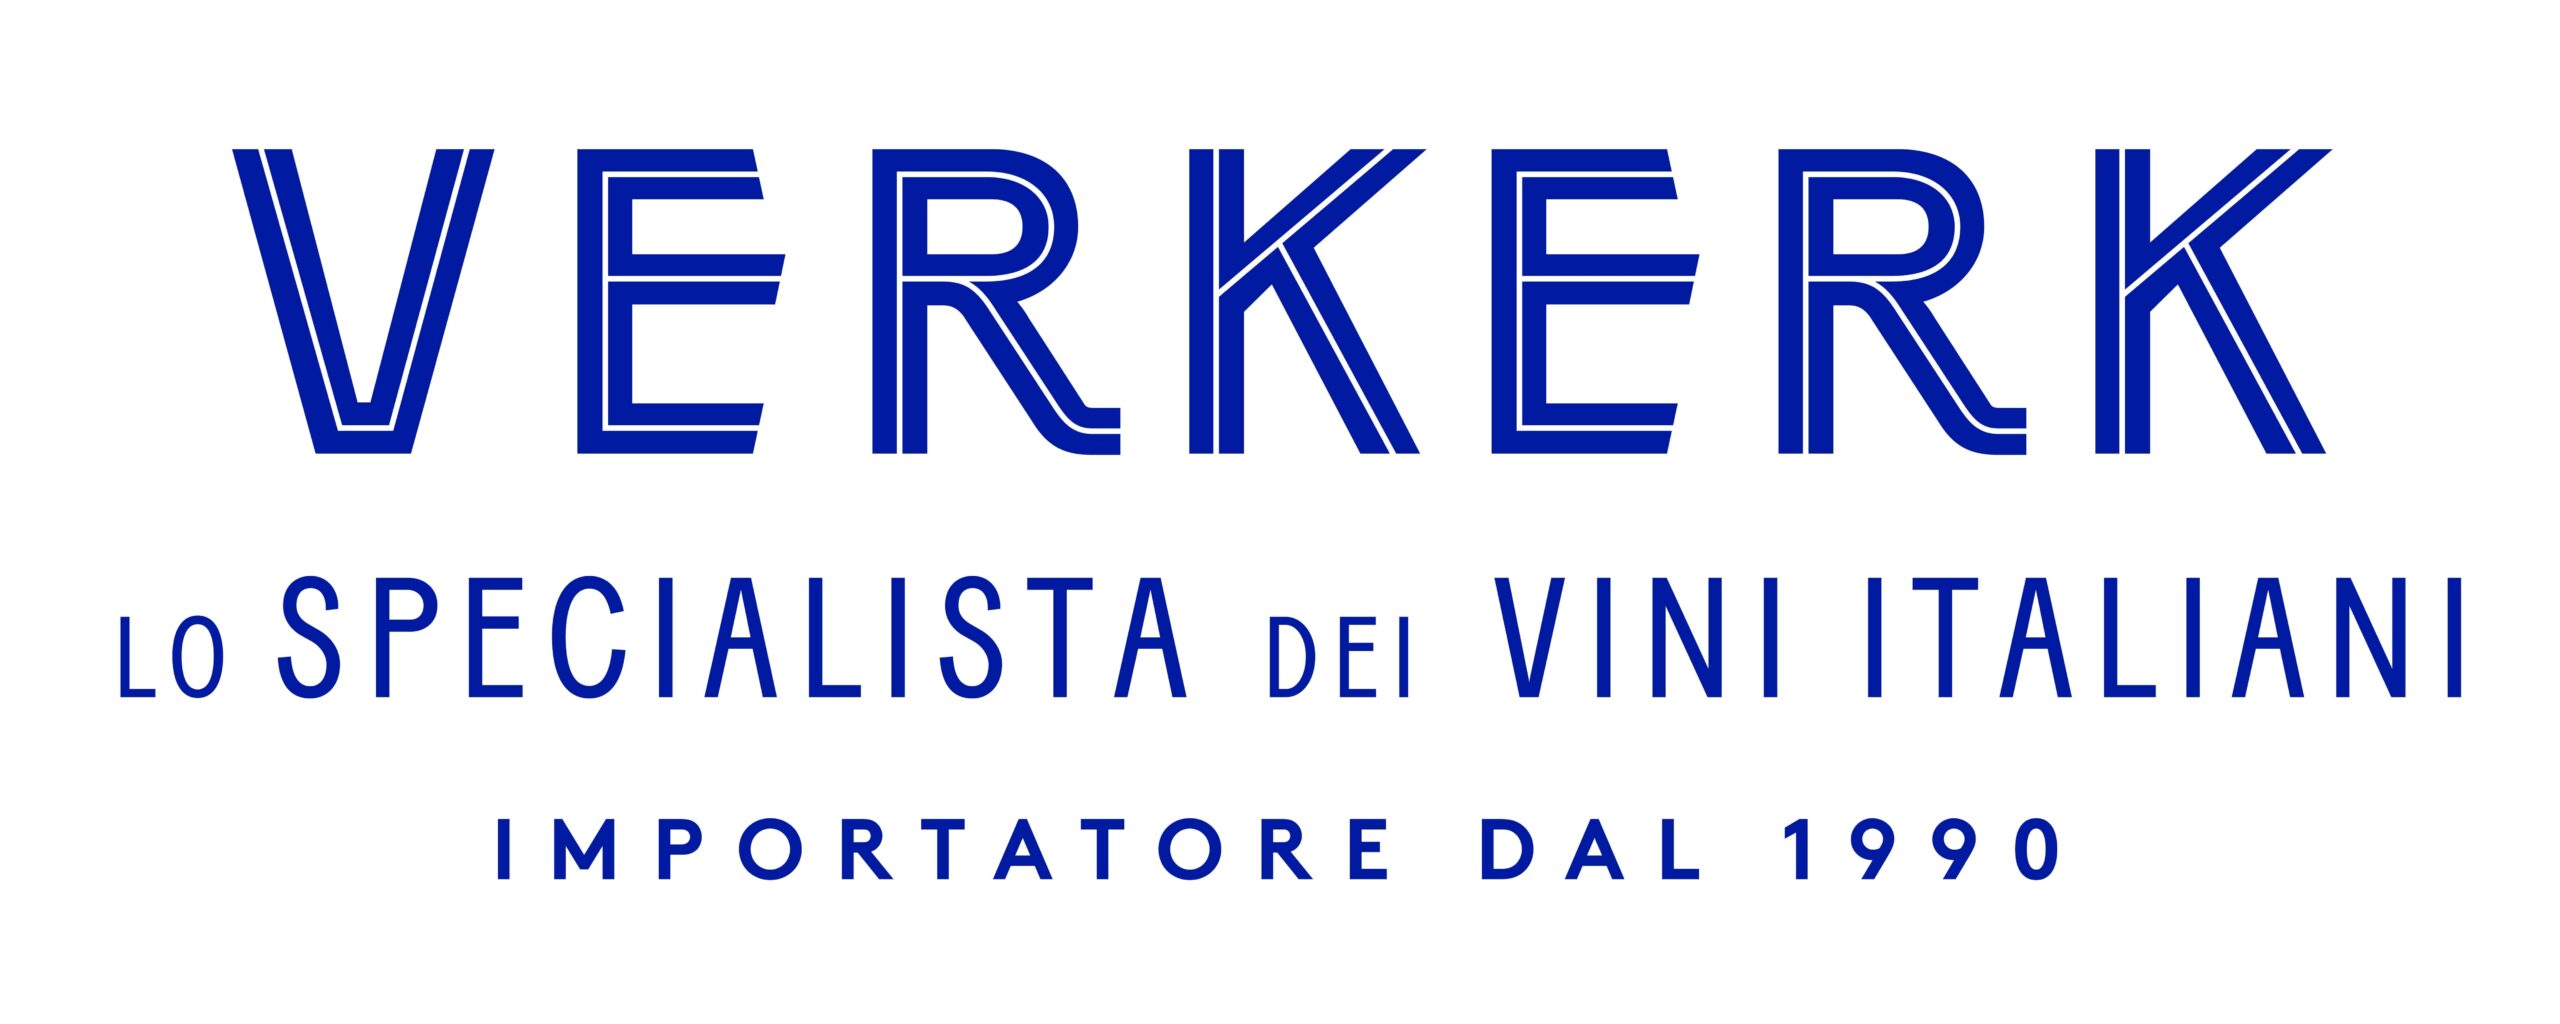 Logo Verkerk